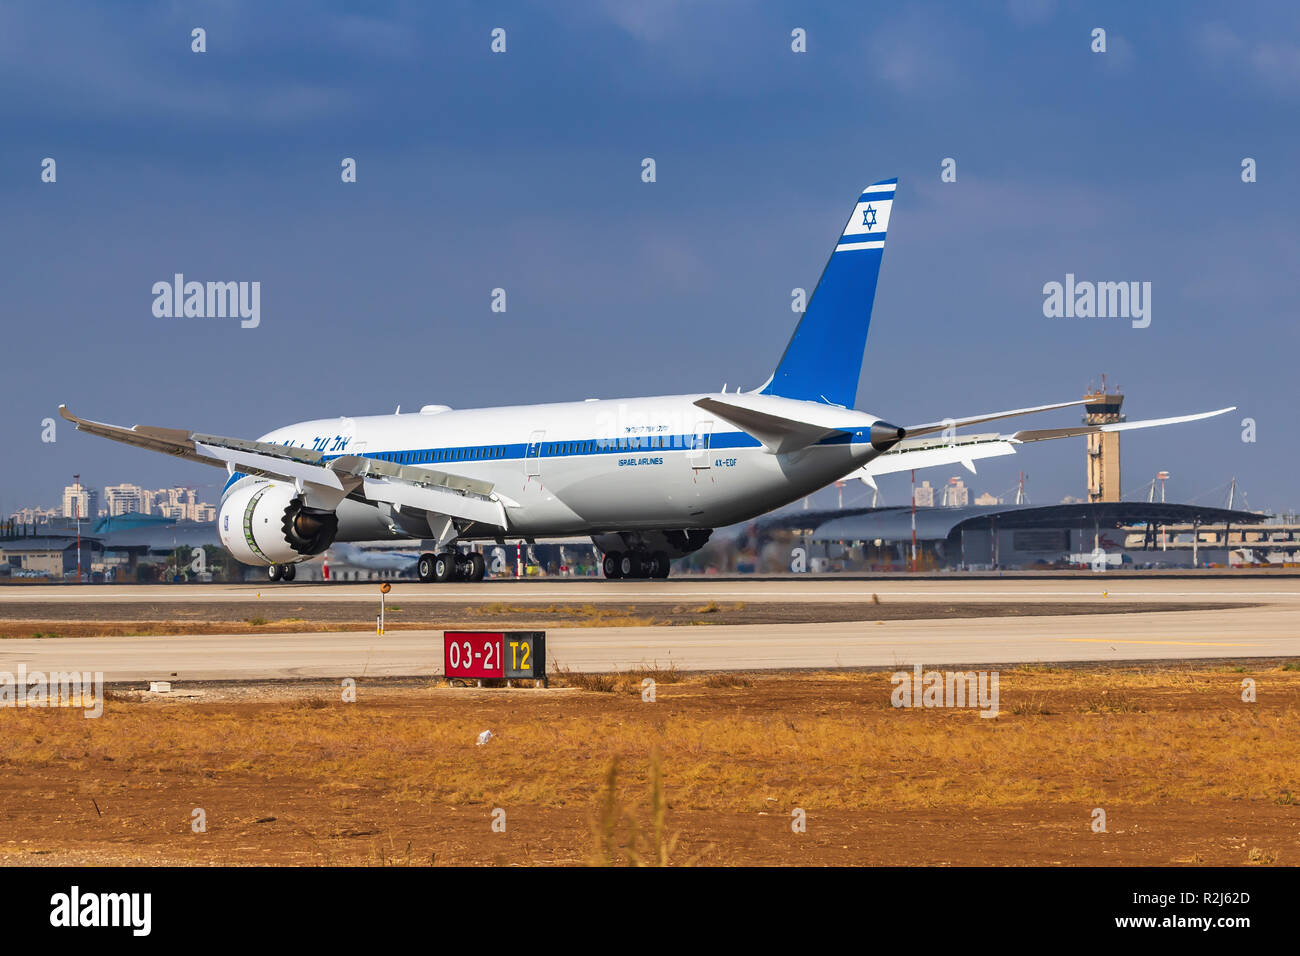 El Al Boeing 787-9 Dreamliner a photographié à l'aéroport Ben Gourion, Israël Banque D'Images